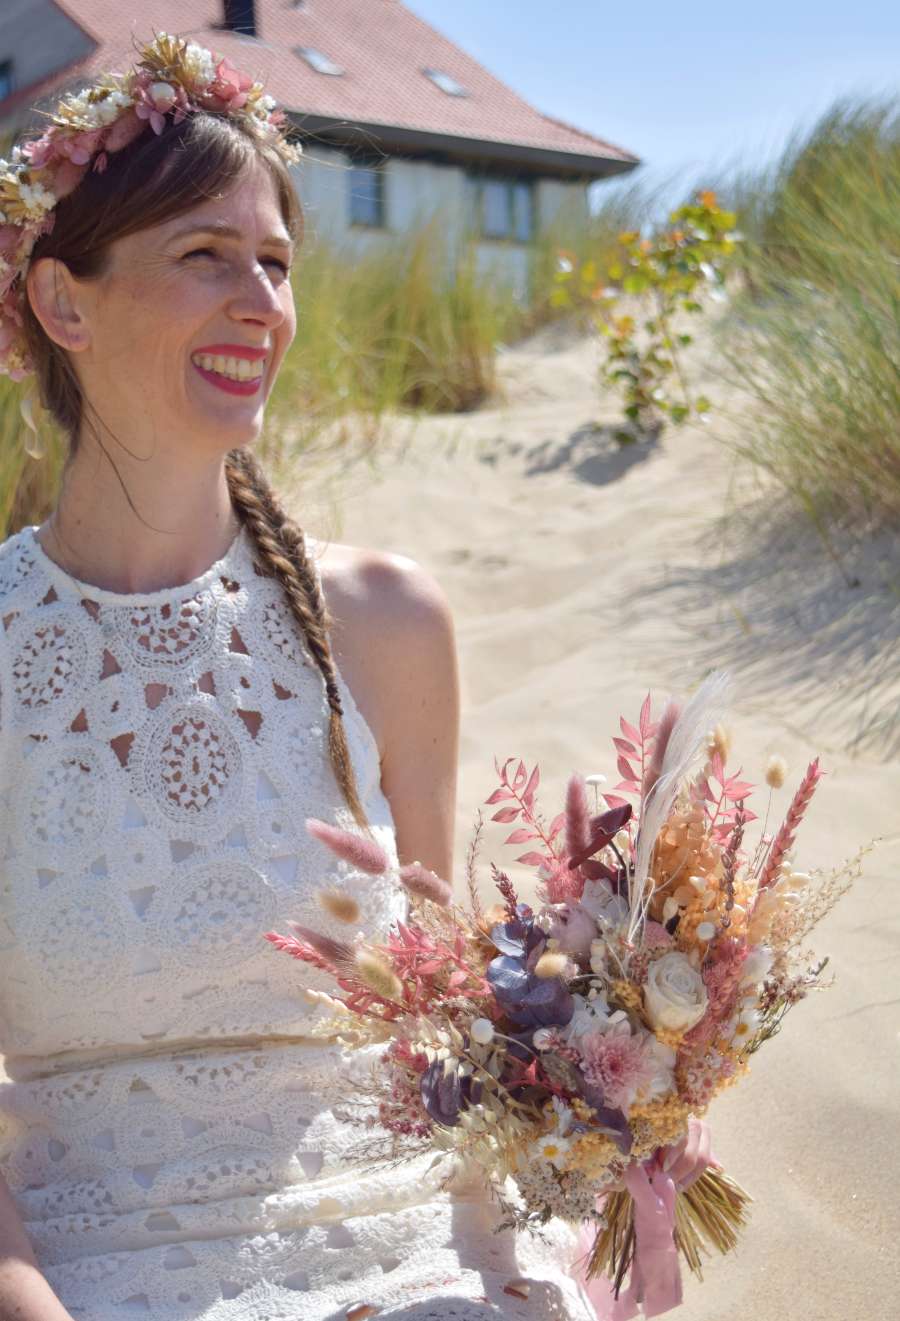 Bruid zit in de duinen en draagt een weelderige roze bloemenkroon met hortensia en heeft in haar handen een modern en X-vormig bruidsboeket van droogbloemen vast in bruine, zachtroze, oranje en witte tinten